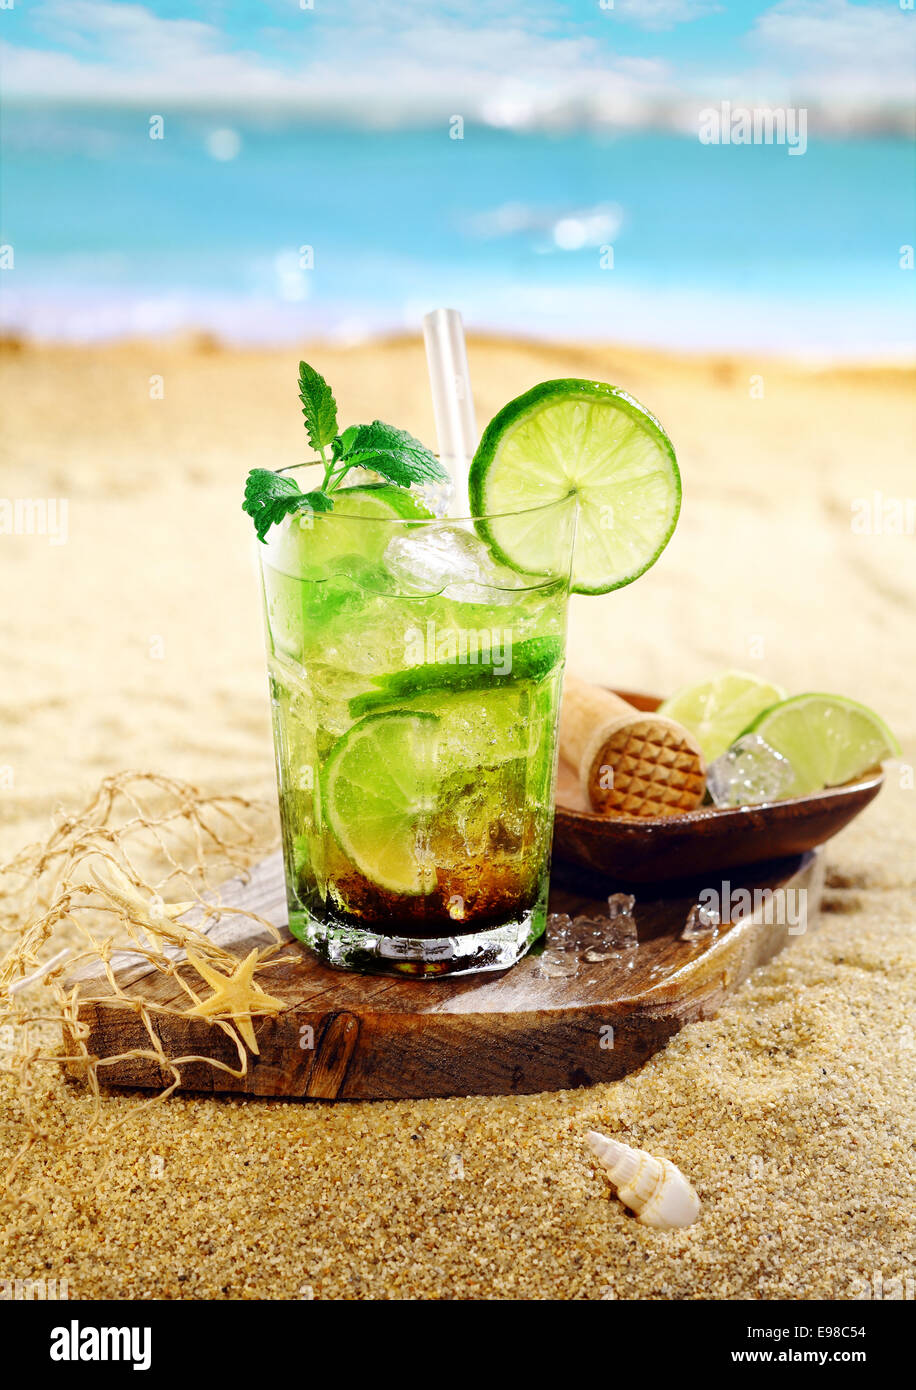 Caipirinha Rum e cocktail di calce guarnite con foglioline di menta e servita su una tavola di legno sulla sabbia dorata di una spiaggia tropicale Foto Stock